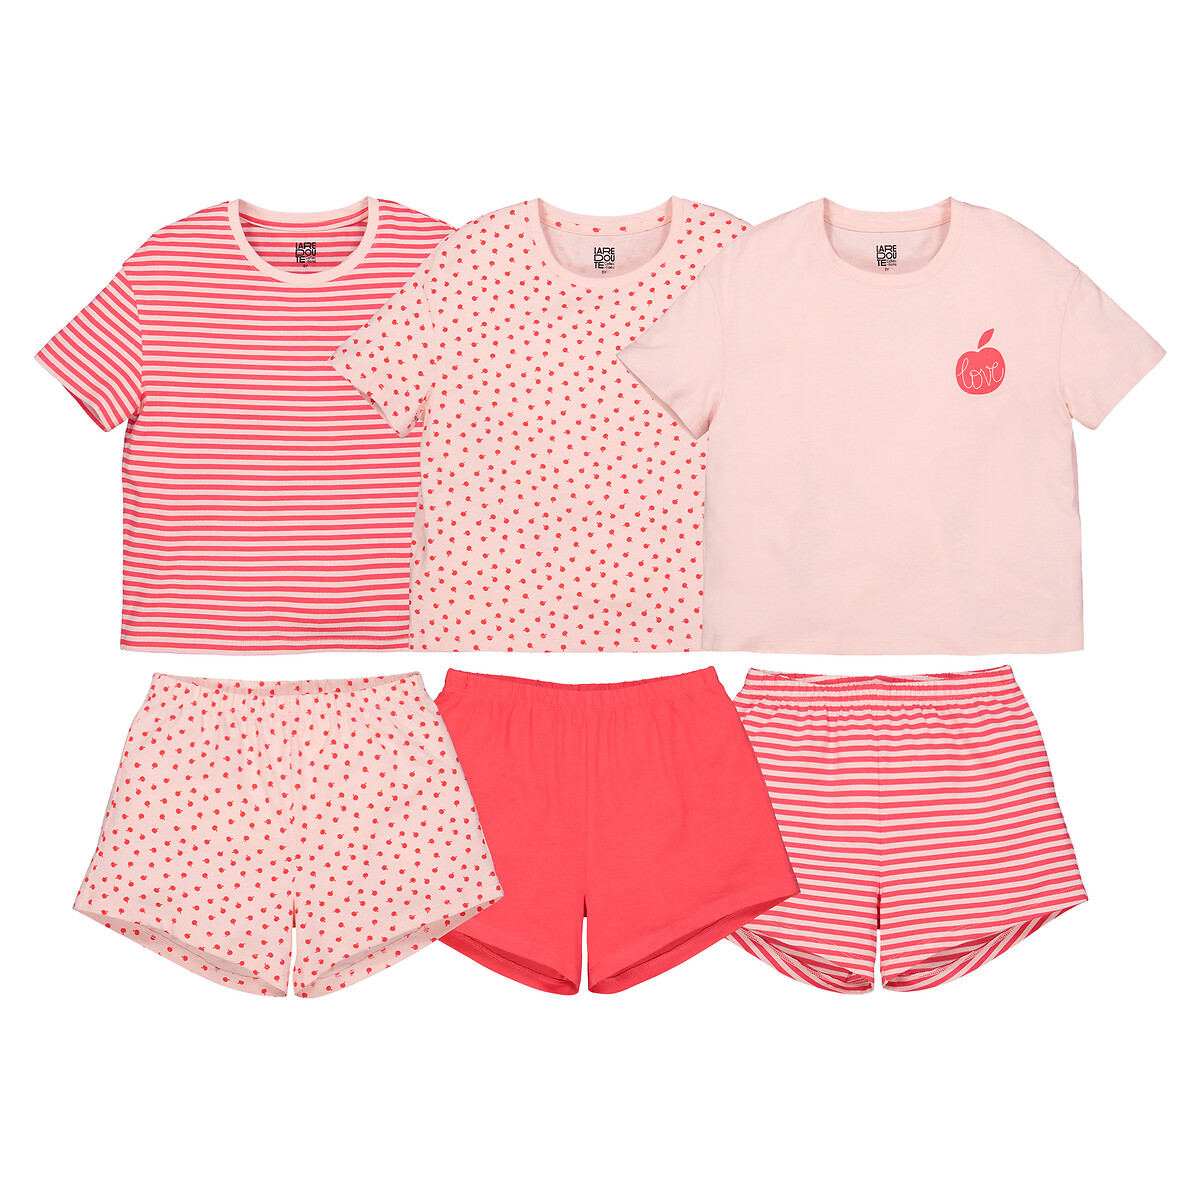 Комплект из трех пижам La Redoute 4 года - 102 см розовый комплект из двух пижам раздельных из велюра принт коалы 4 года 102 см розовый